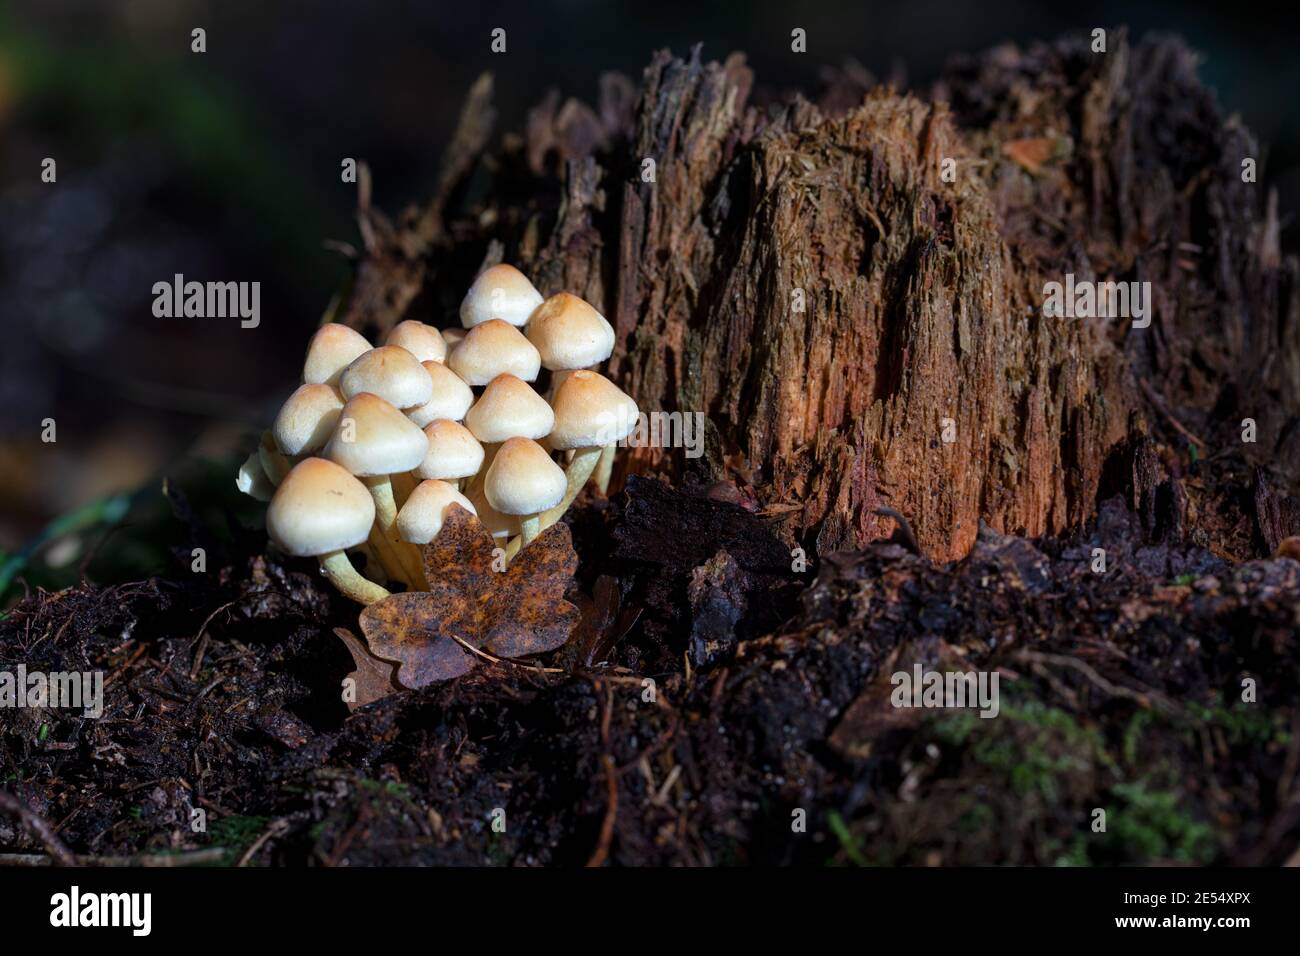 Crosse de champignons sauvages / champignons lumineux poussant contre une souche d'arbre mort dans les bois, Clanger Woods, Wiltshire, Angleterre, Royaume-Uni Banque D'Images